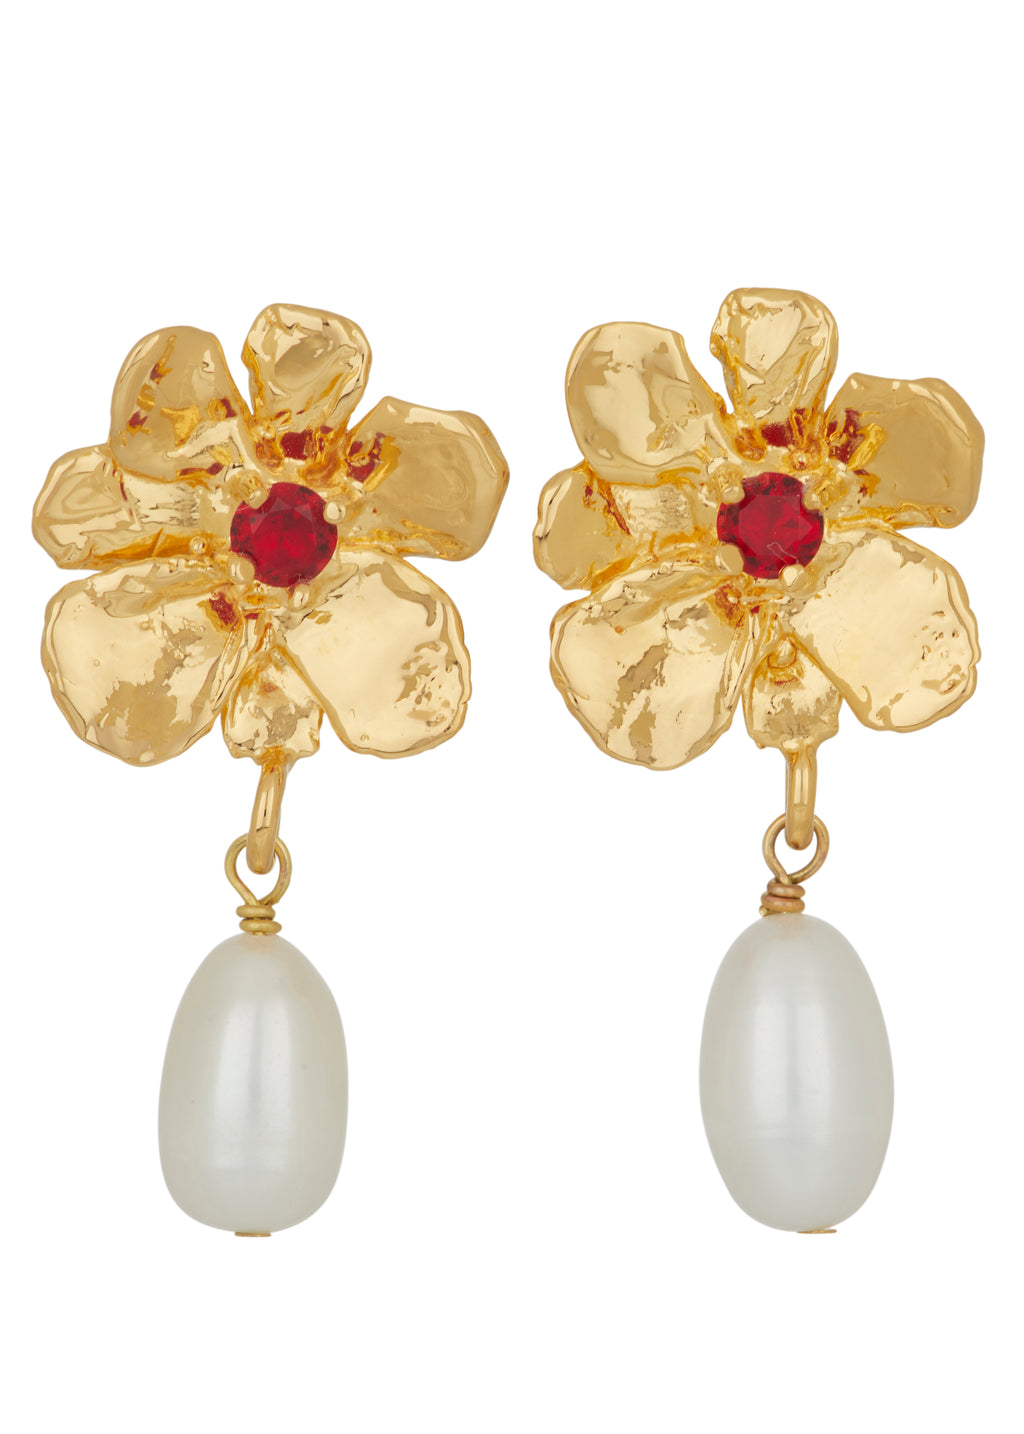 Share 62+ beautiful earrings in gold best